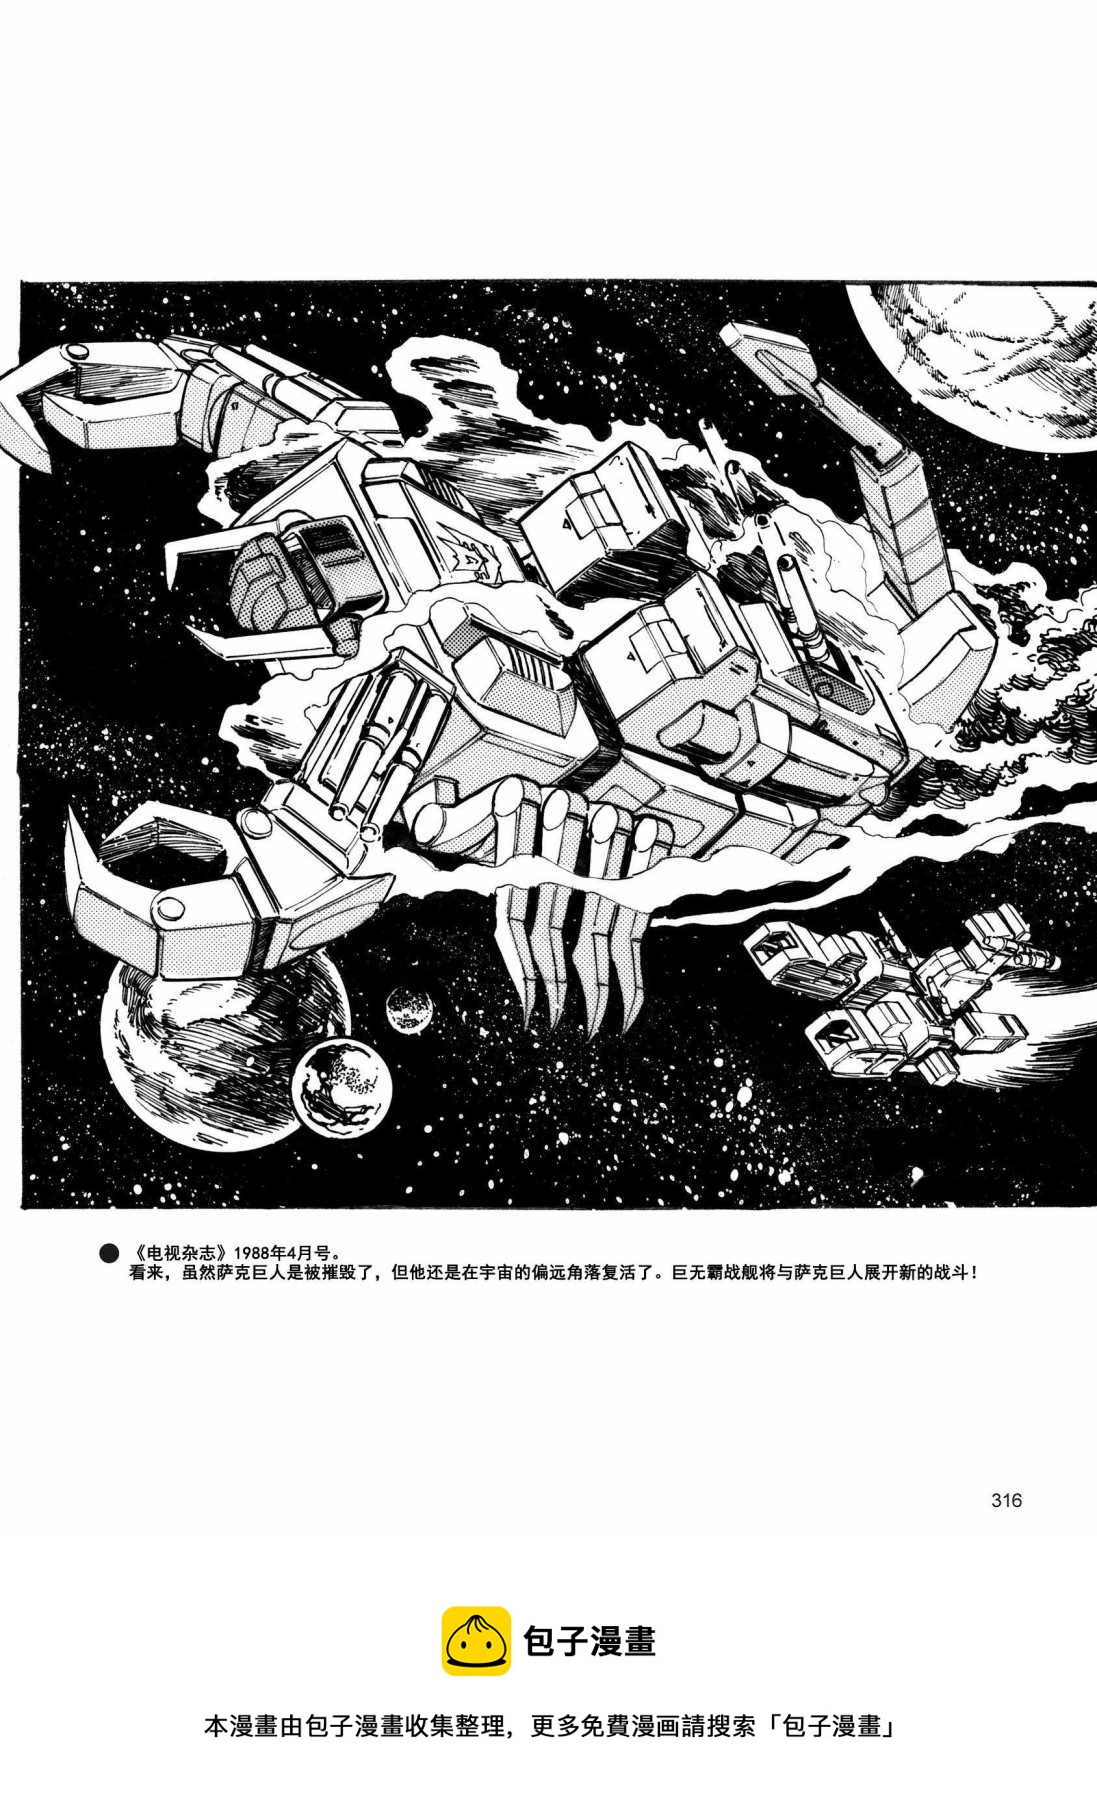 变形金刚日版G1杂志插画 - 变形金刚：头领战士 - 8